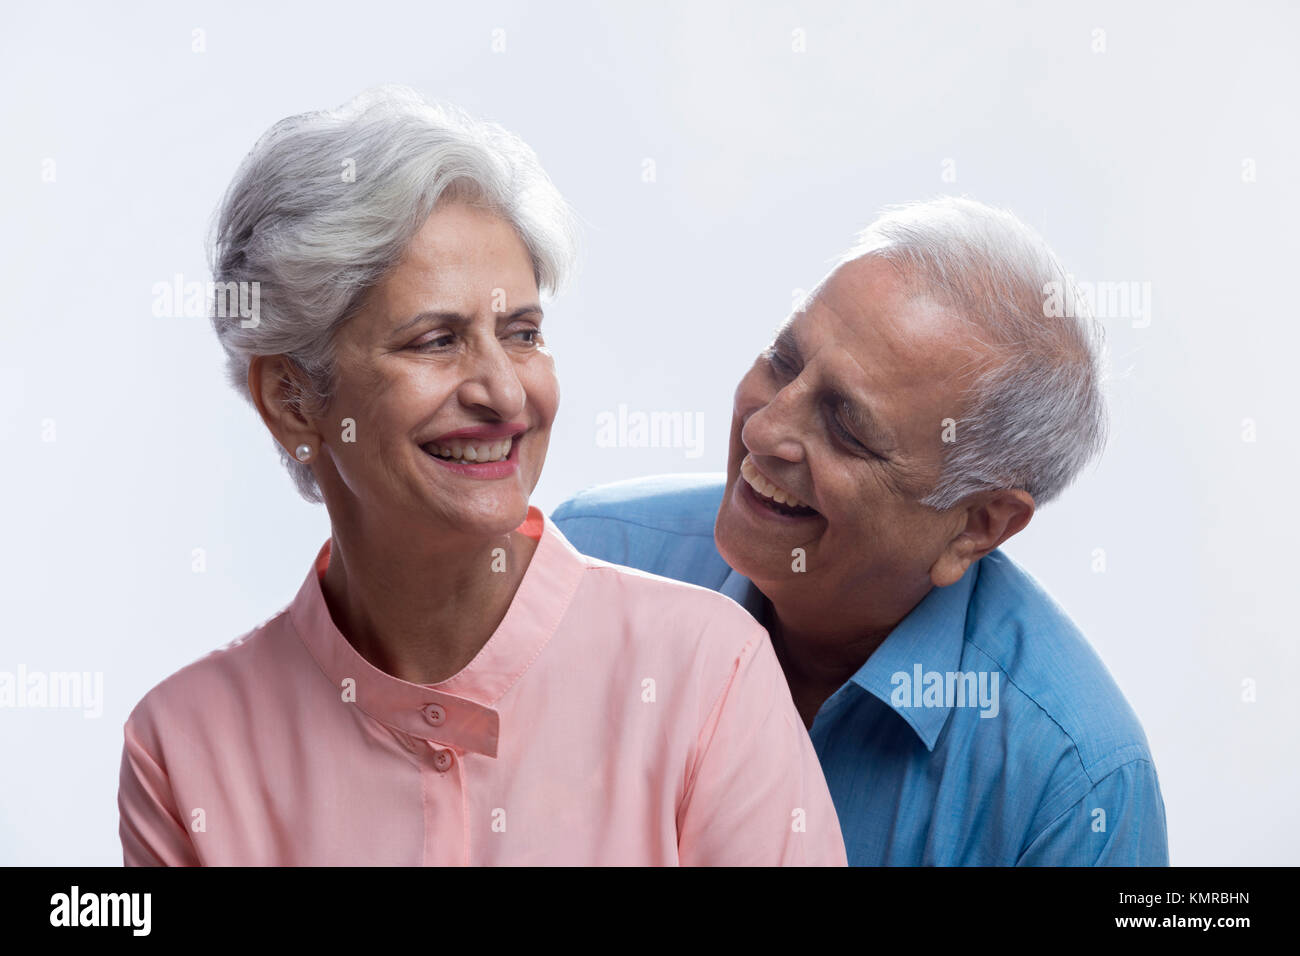 Close up of senior couple smiling Stock Photo